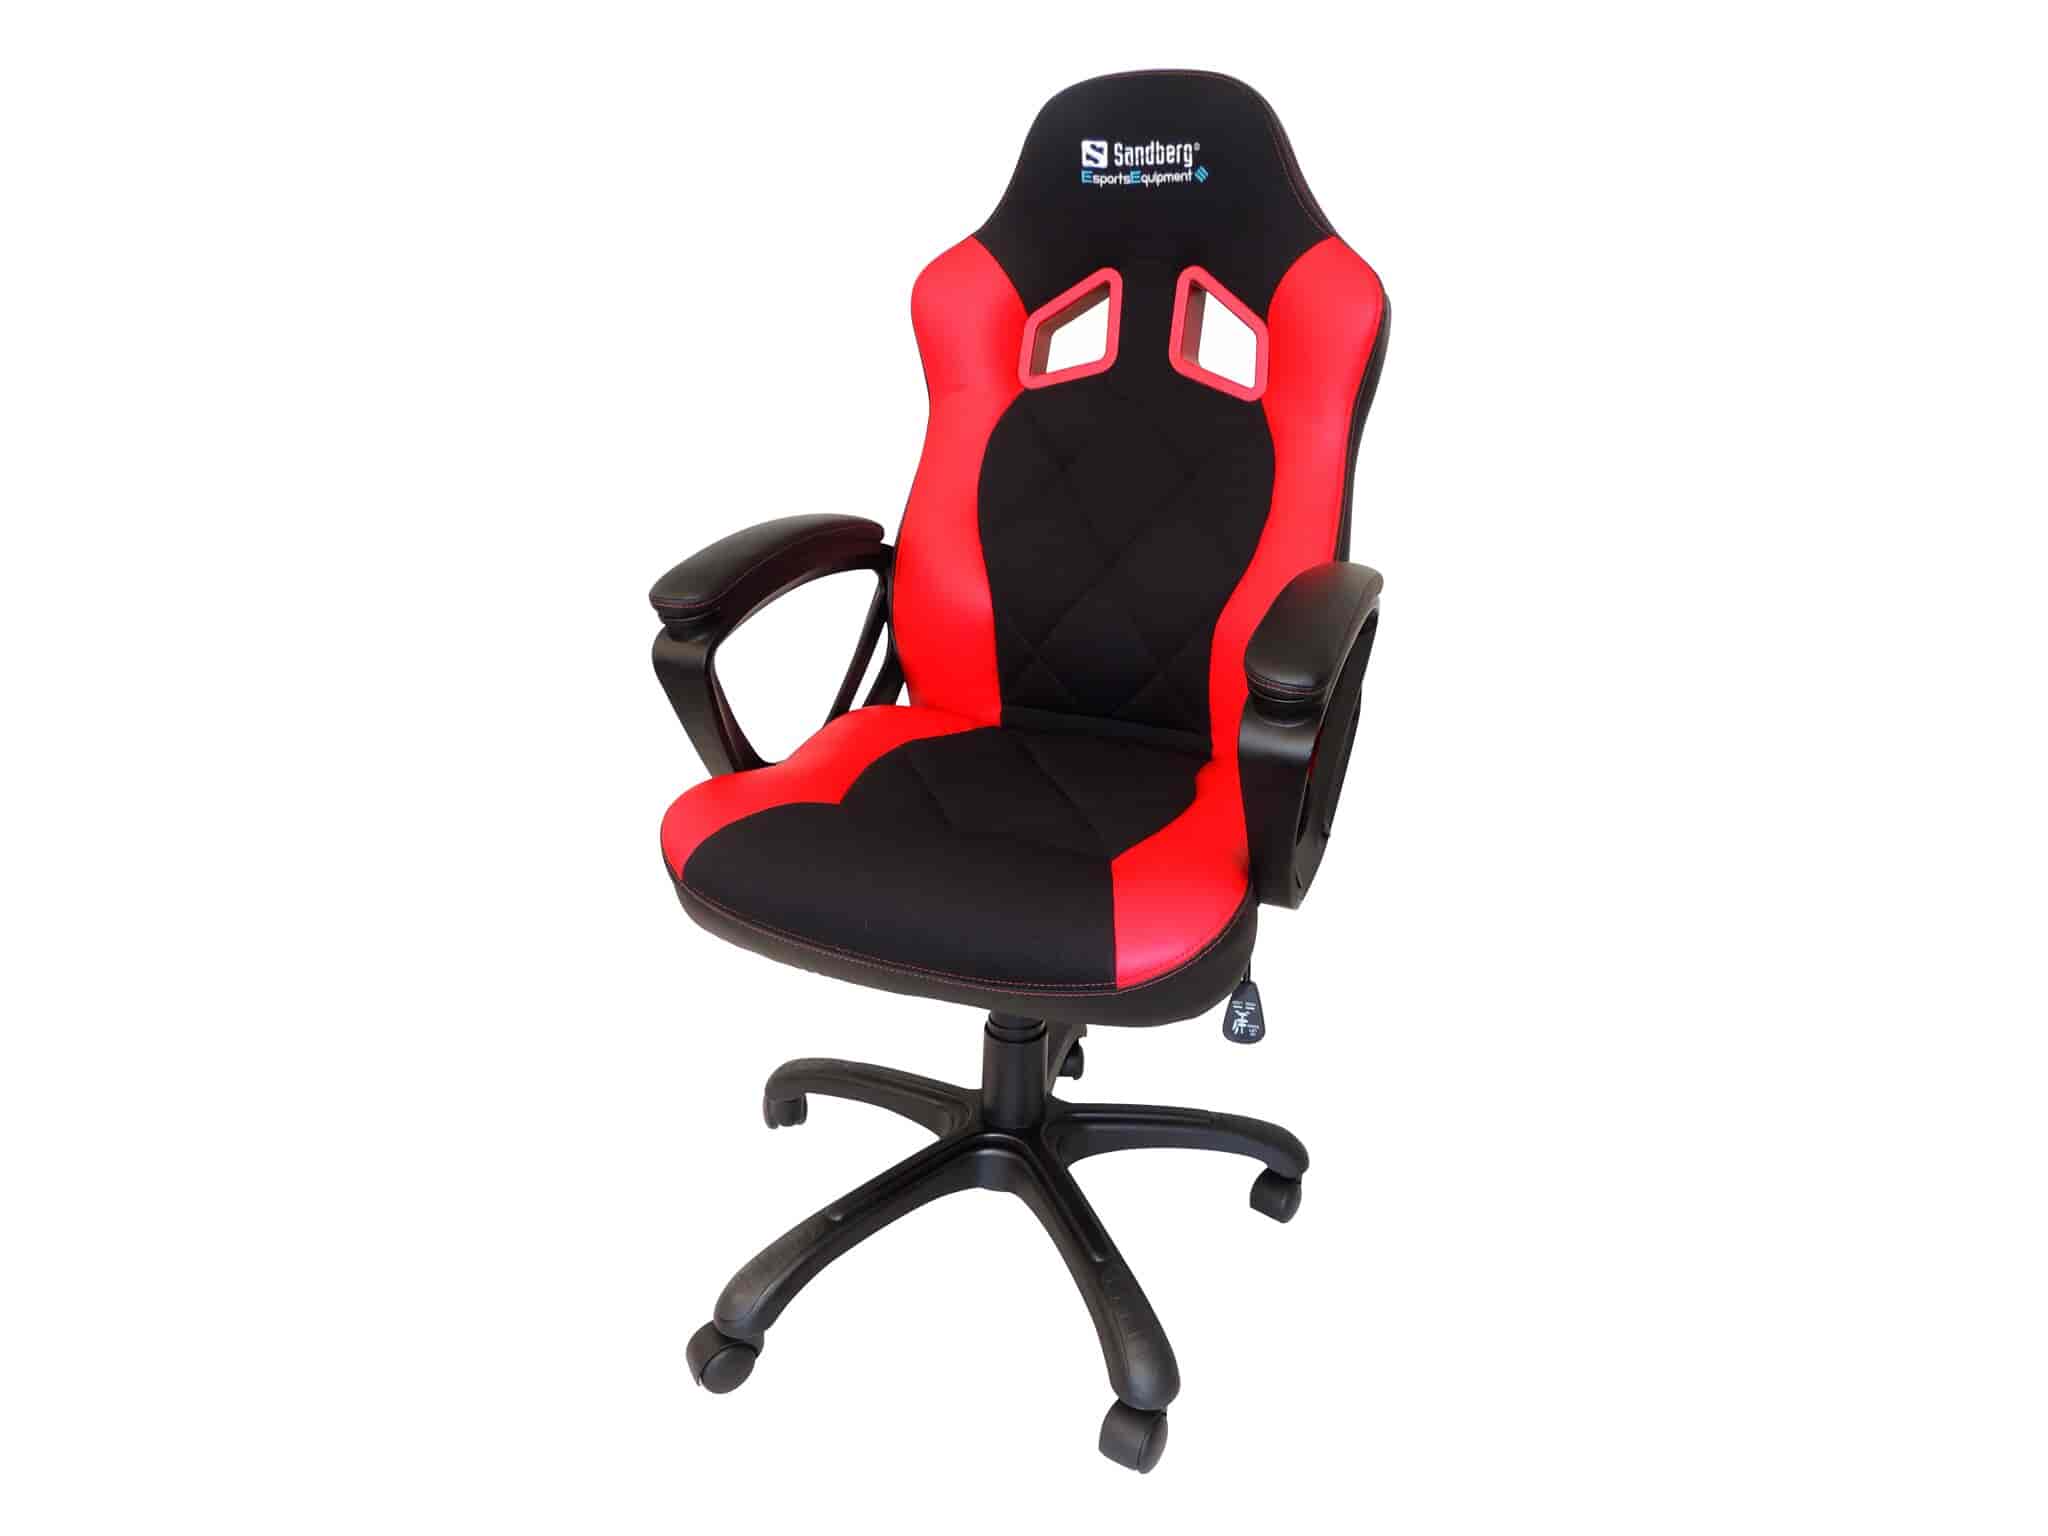 Warrior Chair - perfekt gaming stol - her sidder enhver rigtig gamer i timevis